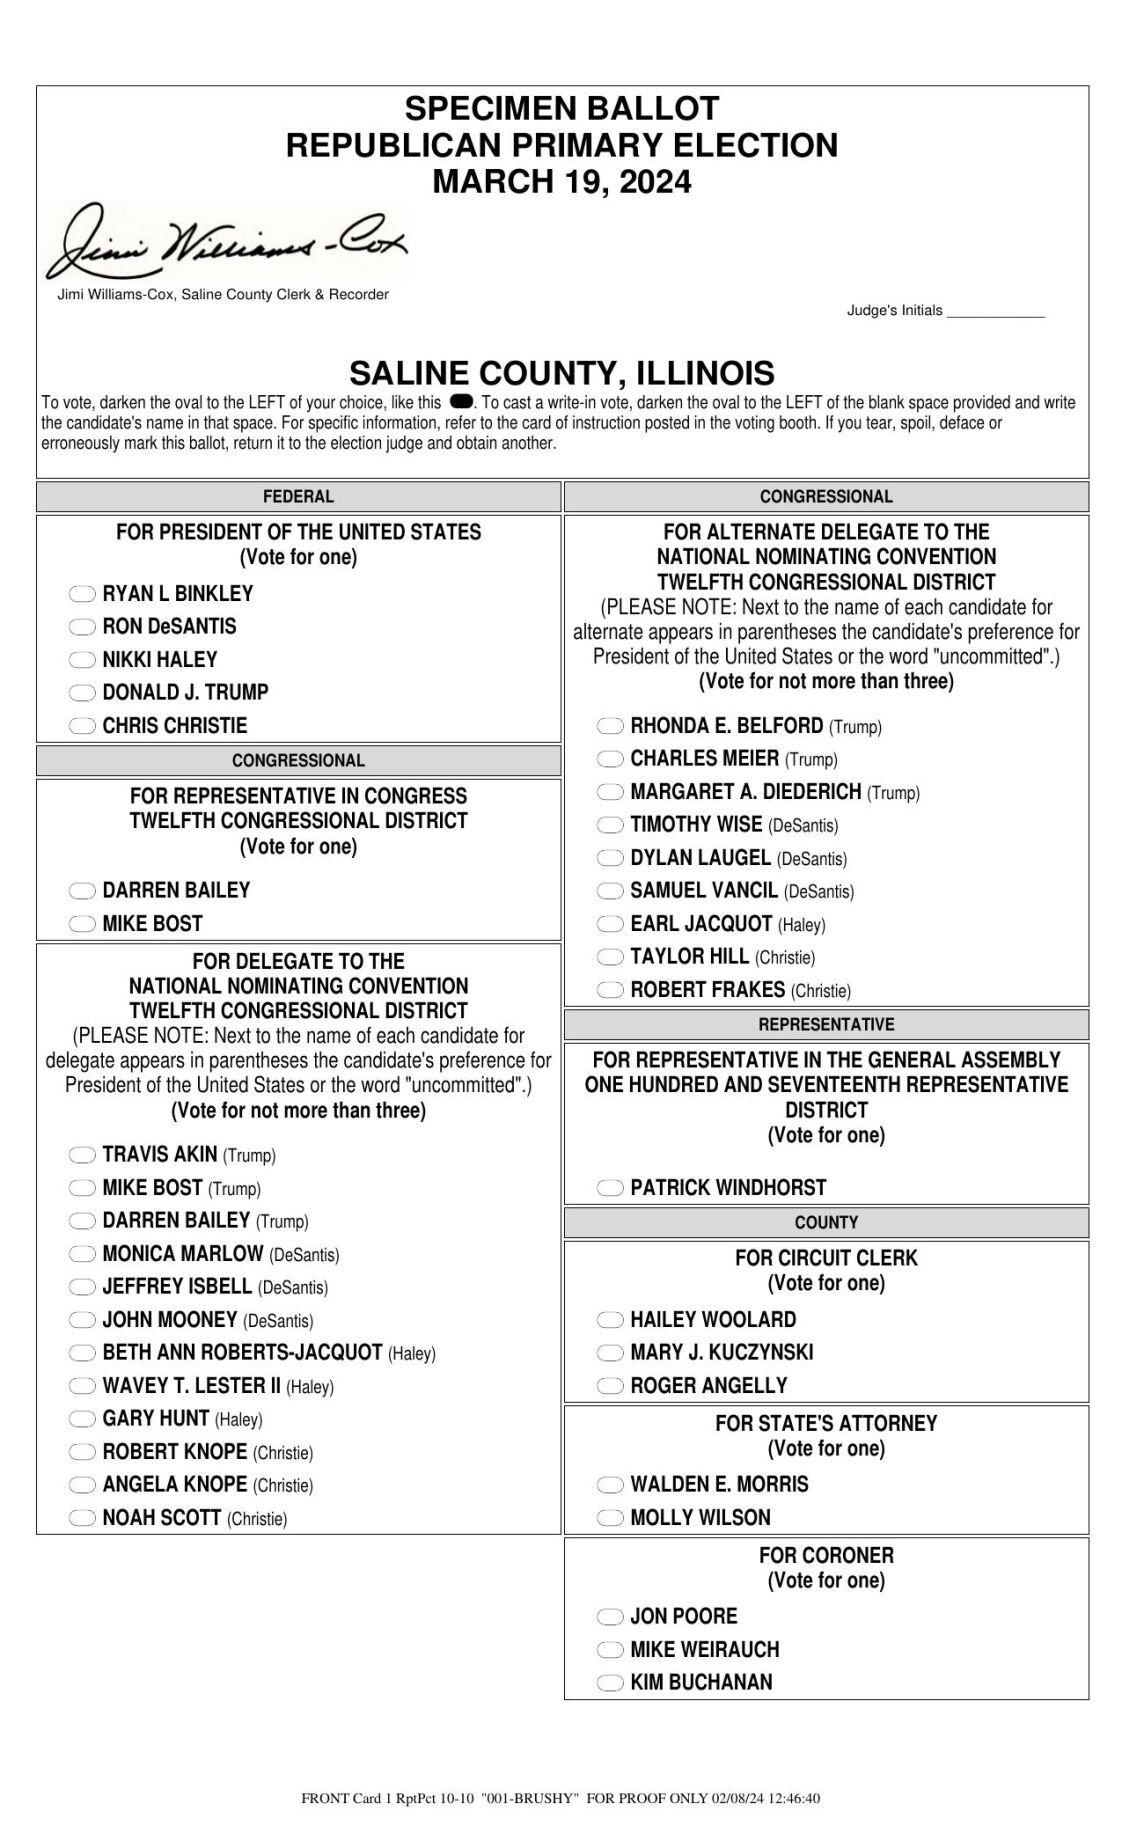 Saline County Sample Ballot